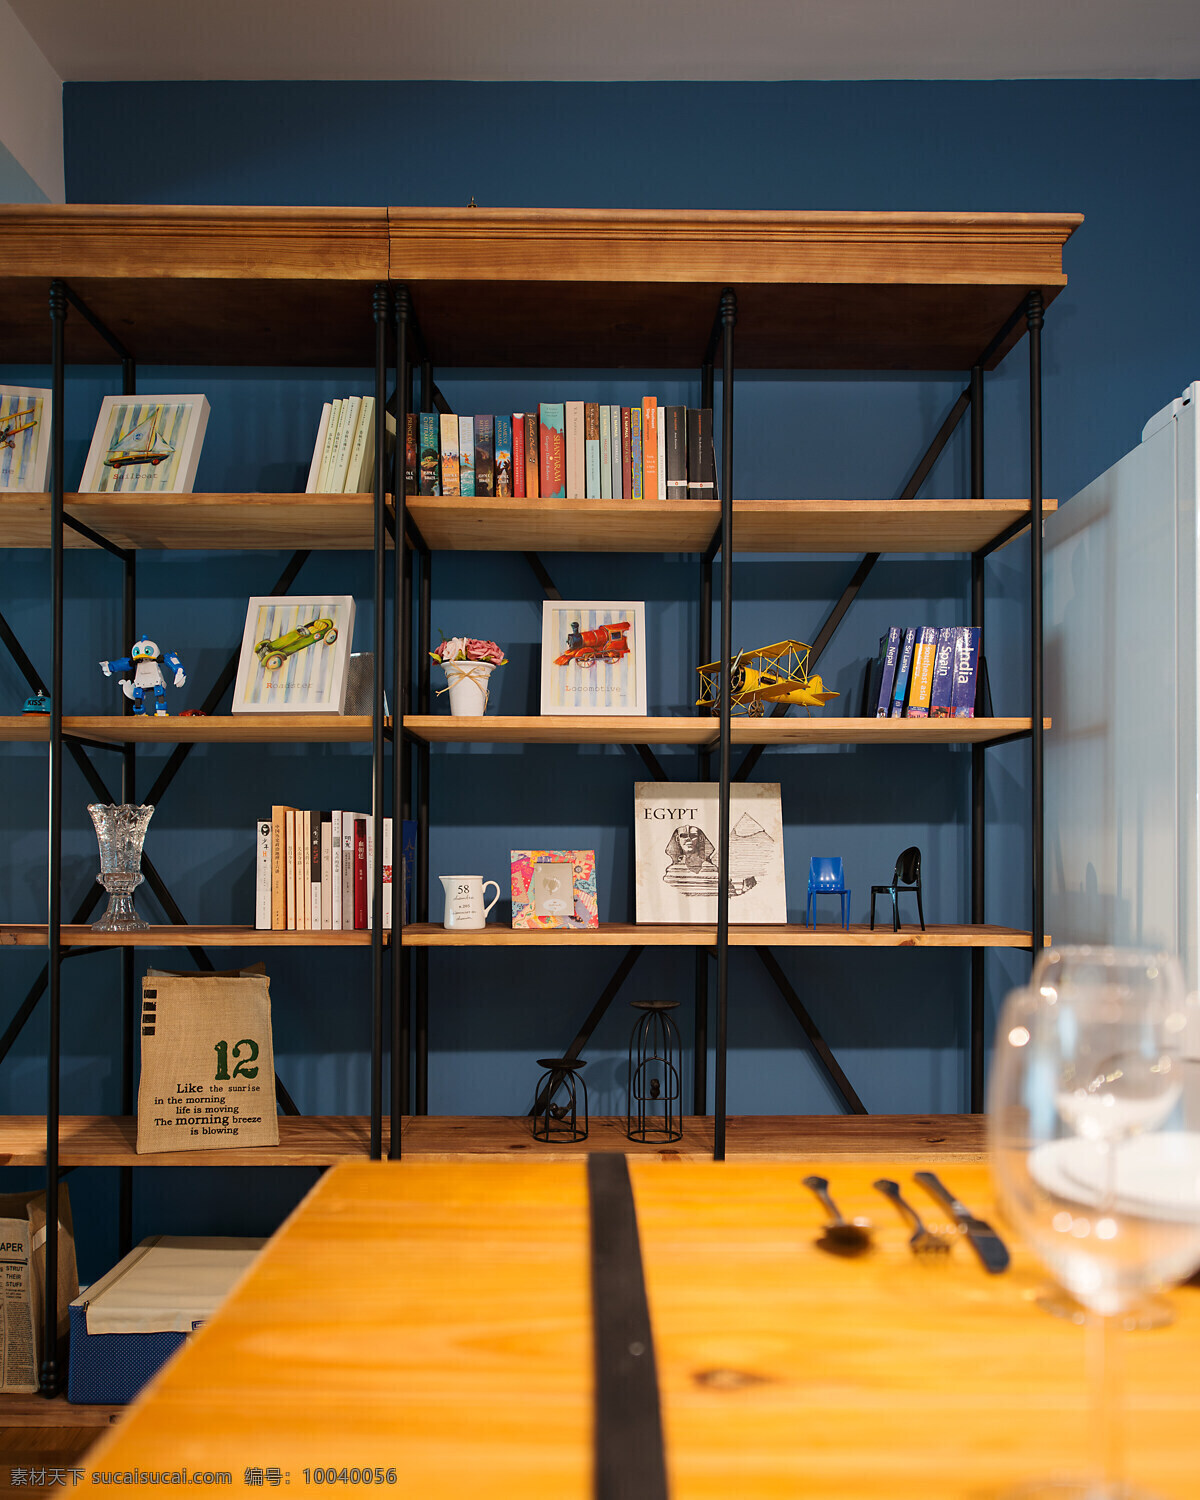 田园 客厅 木制 桌子 室内装修 效果图 蓝色背景墙 客厅装修 展示架 书架 木制餐桌